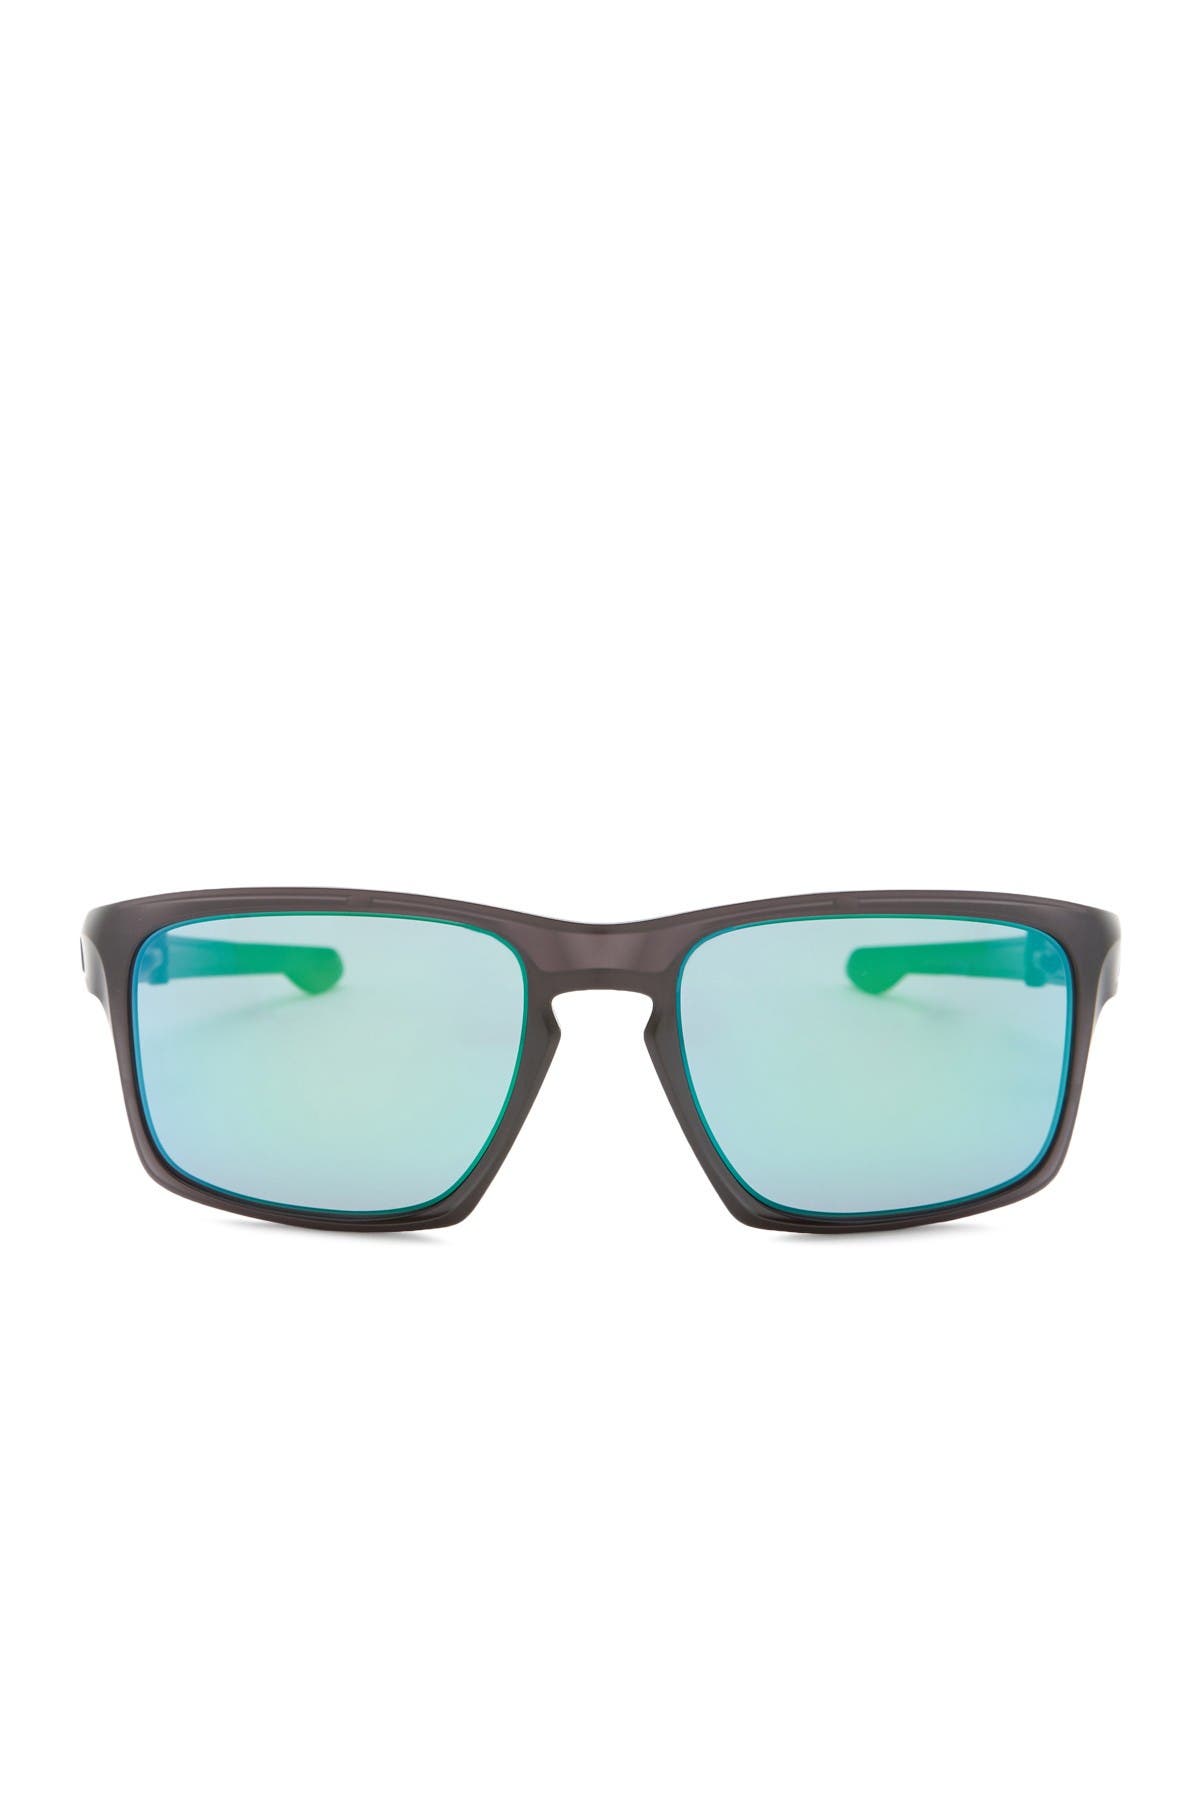 oakley men's sliver polarized rectangular sunglasses